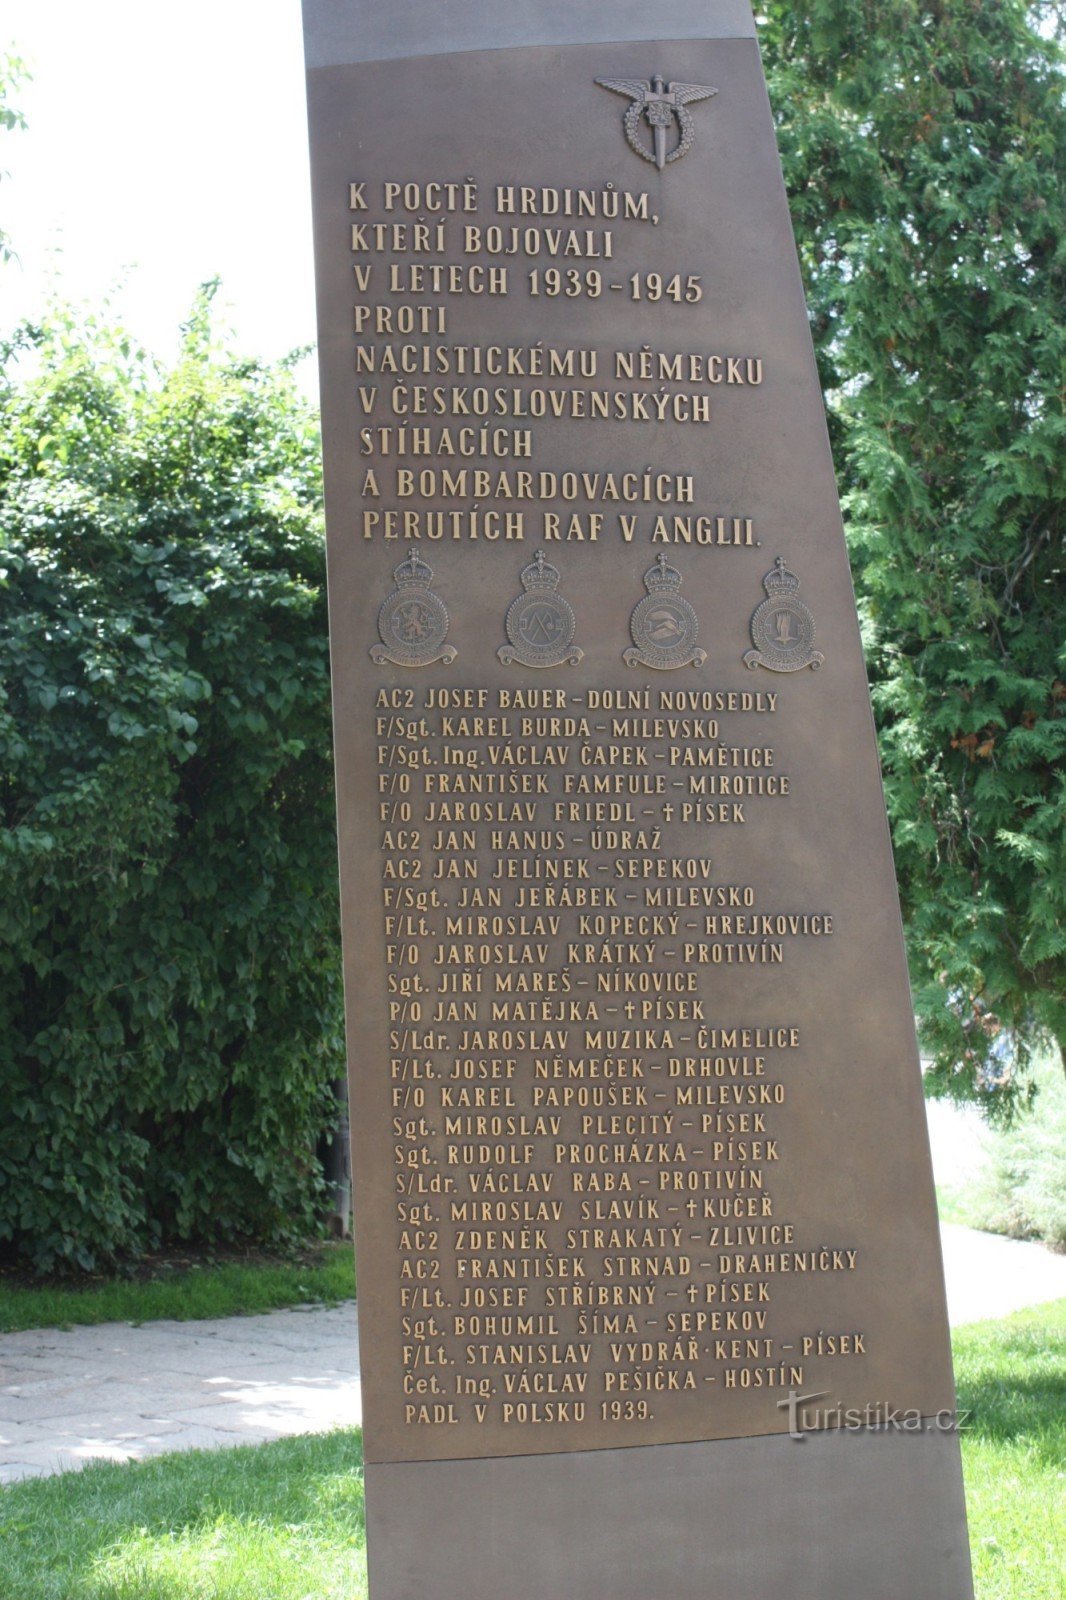 Ένα μνημείο σε σχήμα σπασμένης λεπίδας προπέλας στο Πίσεκ